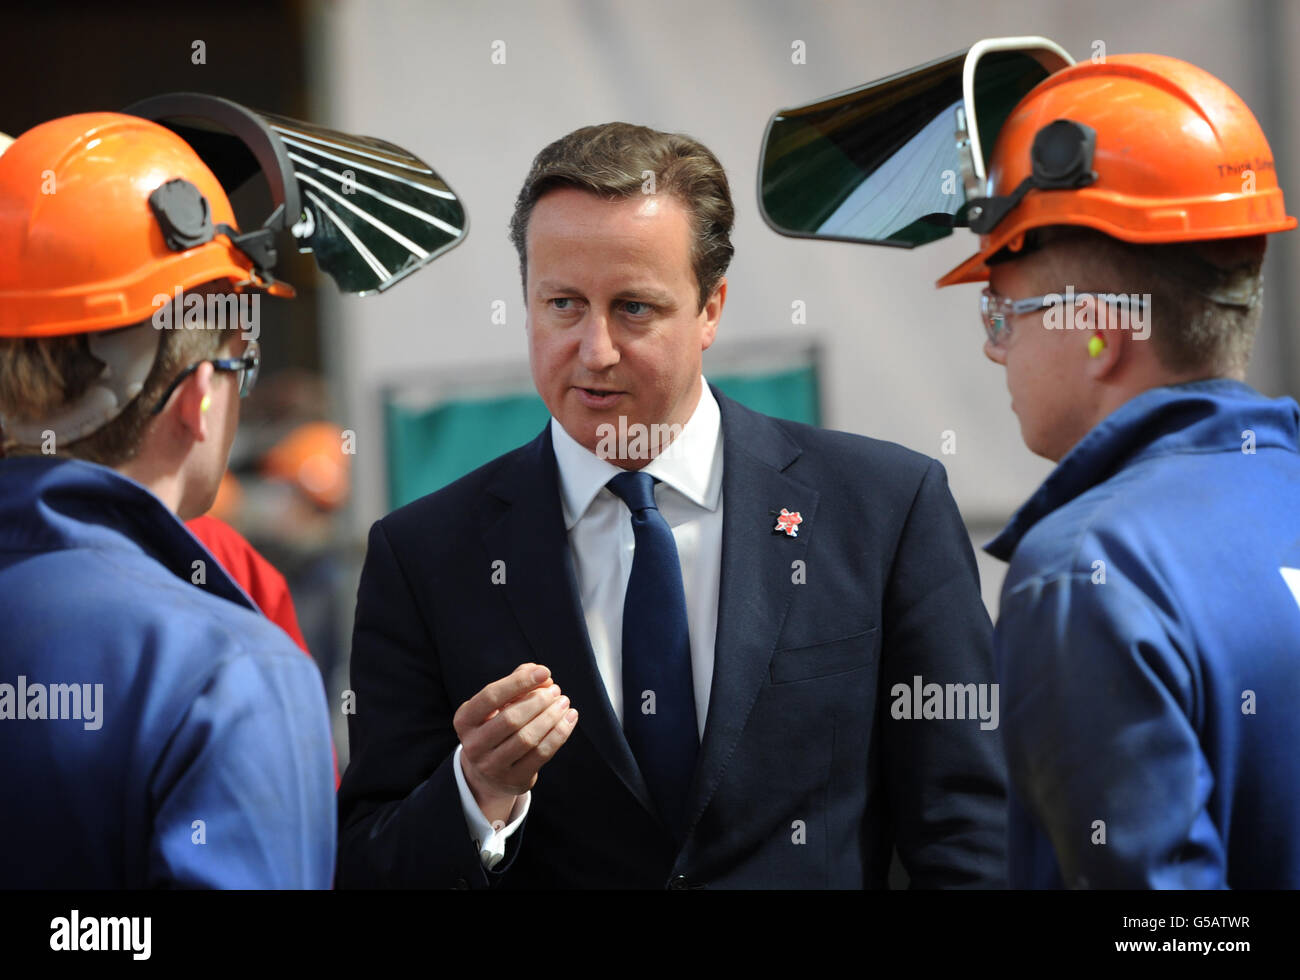 Il primo ministro David Cameron incontra lavoratori a BiFab, una società di costruzioni a Buckhaven, Fife, che produce componenti per piattaforme petrolifere e parchi eolici a energia rinnovabile. Foto Stock